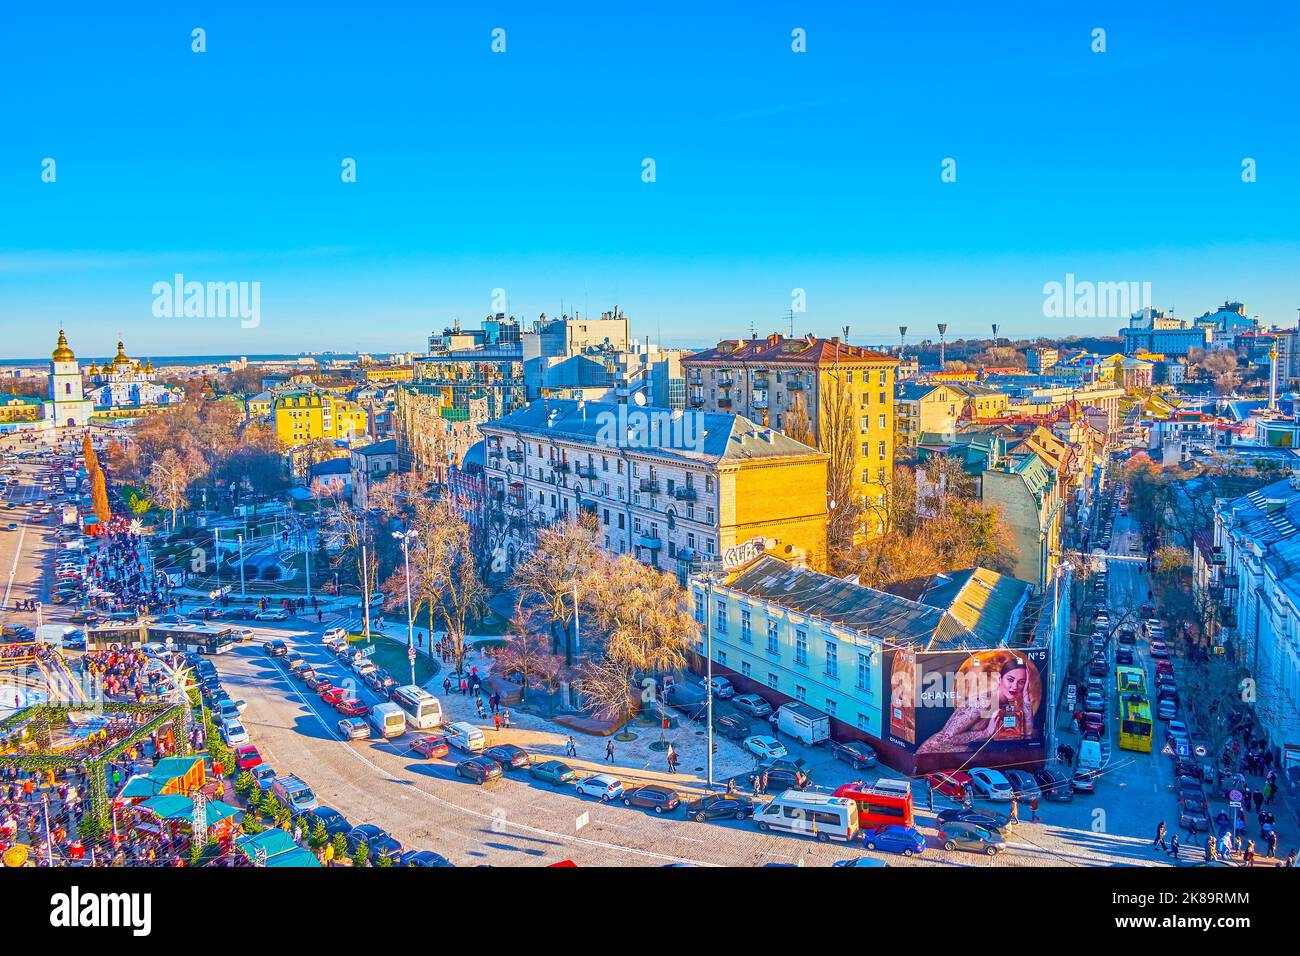 KIEV, UCRANIA - 2 DE ENERO de 2022: Volodymyrska tráfico callejero y feria de Navidad en la Plaza de Sofía, el 2 de enero en Kiev, Ucrania Foto de stock